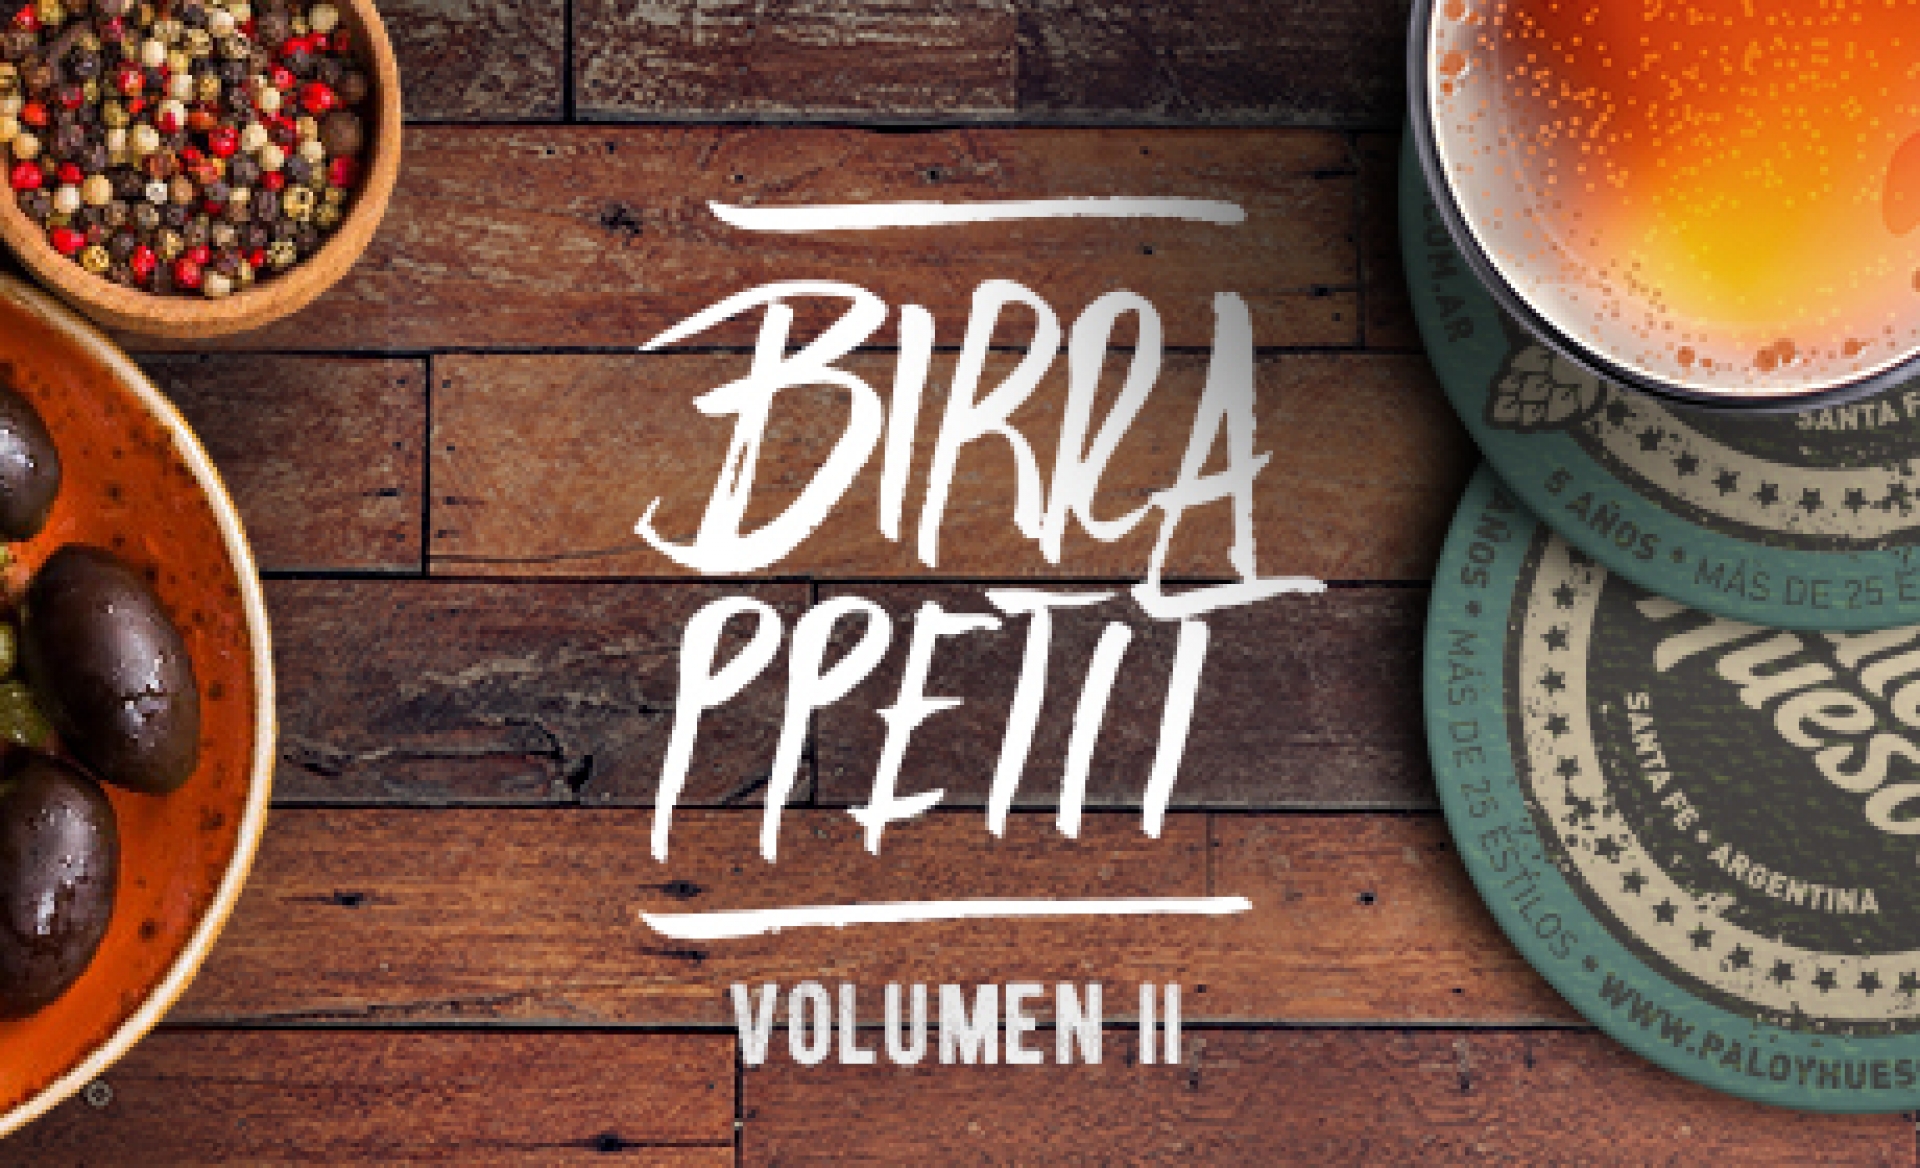 BirraPpetit, Vol II